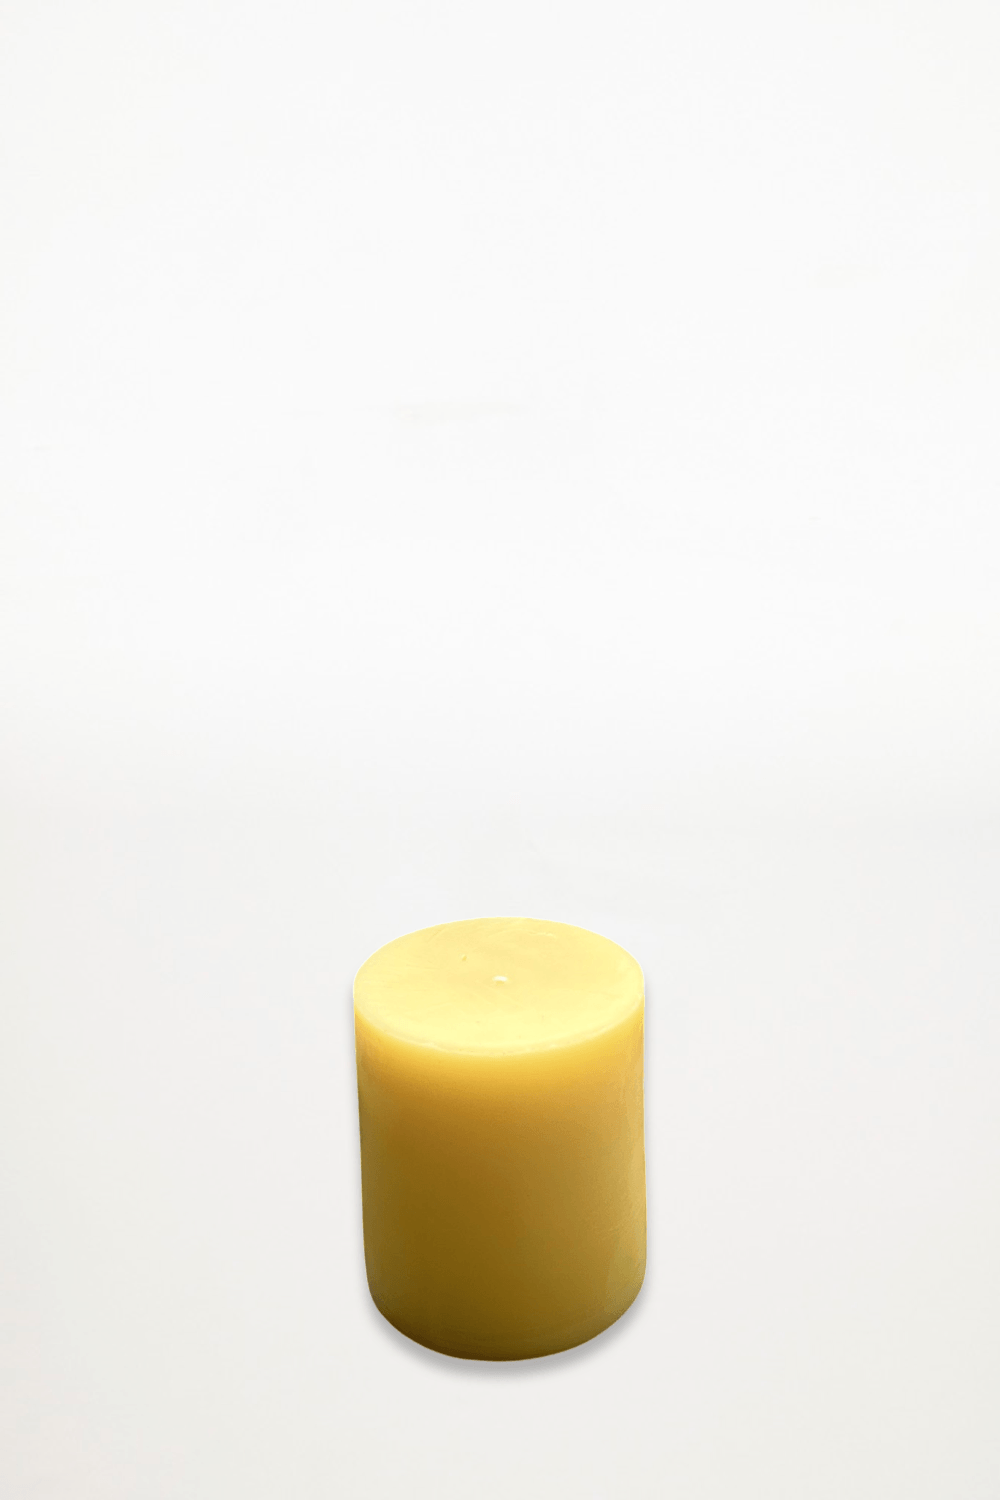 Golden Sun - 100% Australian Beeswax Candles - Pillar 75mm - Ensemble Studios